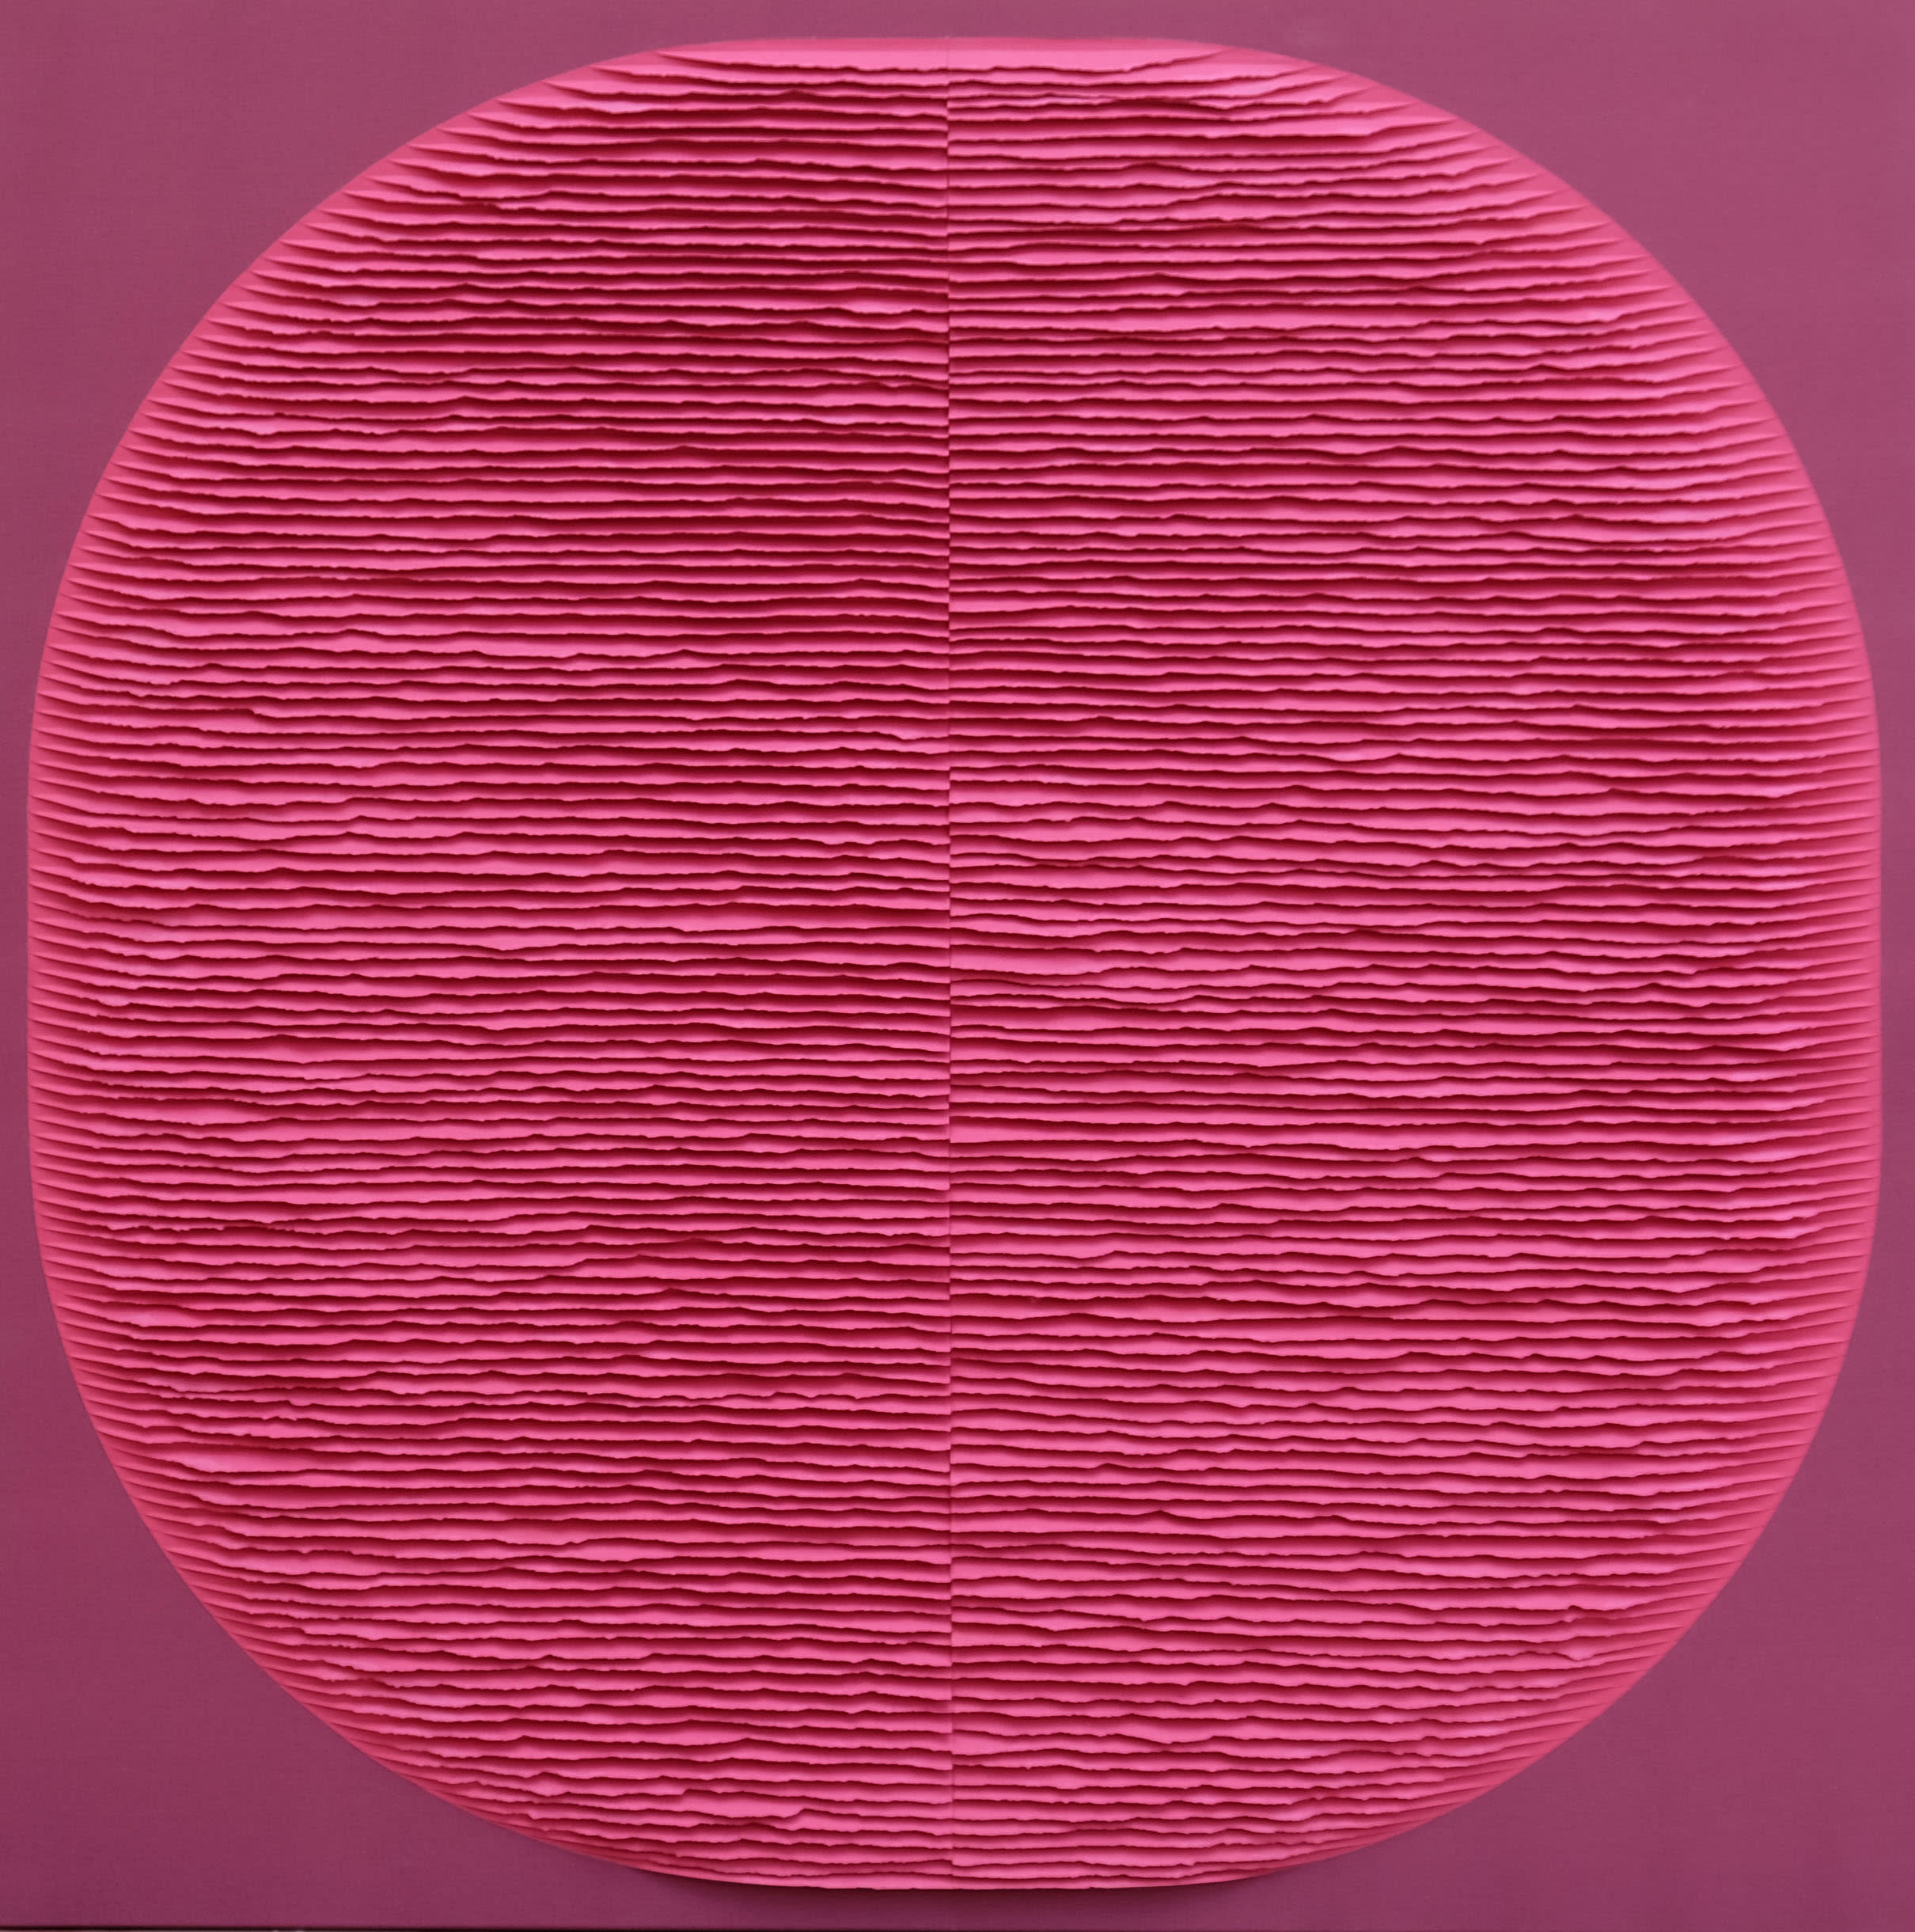 Image of Forme framboise sur fond rouge foncé